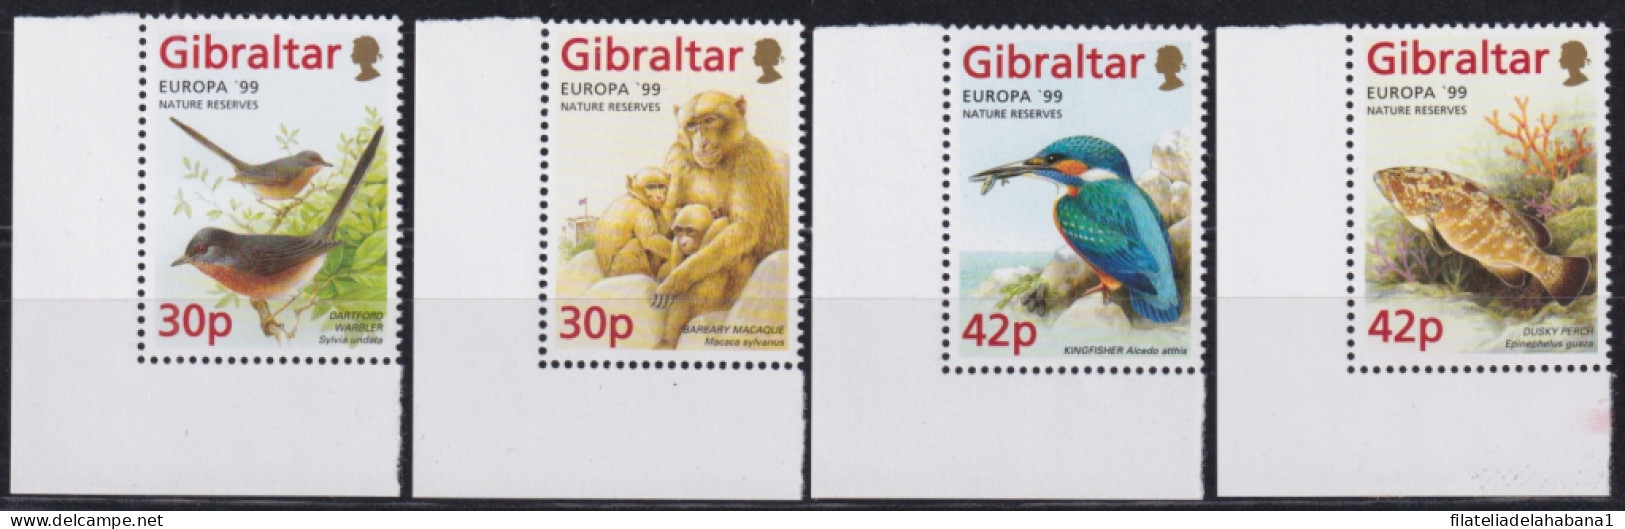 F-EX50154 GIBRALTAR MNH 1999 EUROPE CEPT WILDLIFE BIRD AVES FISH MONKEY & GARDEN.  - Unused Stamps